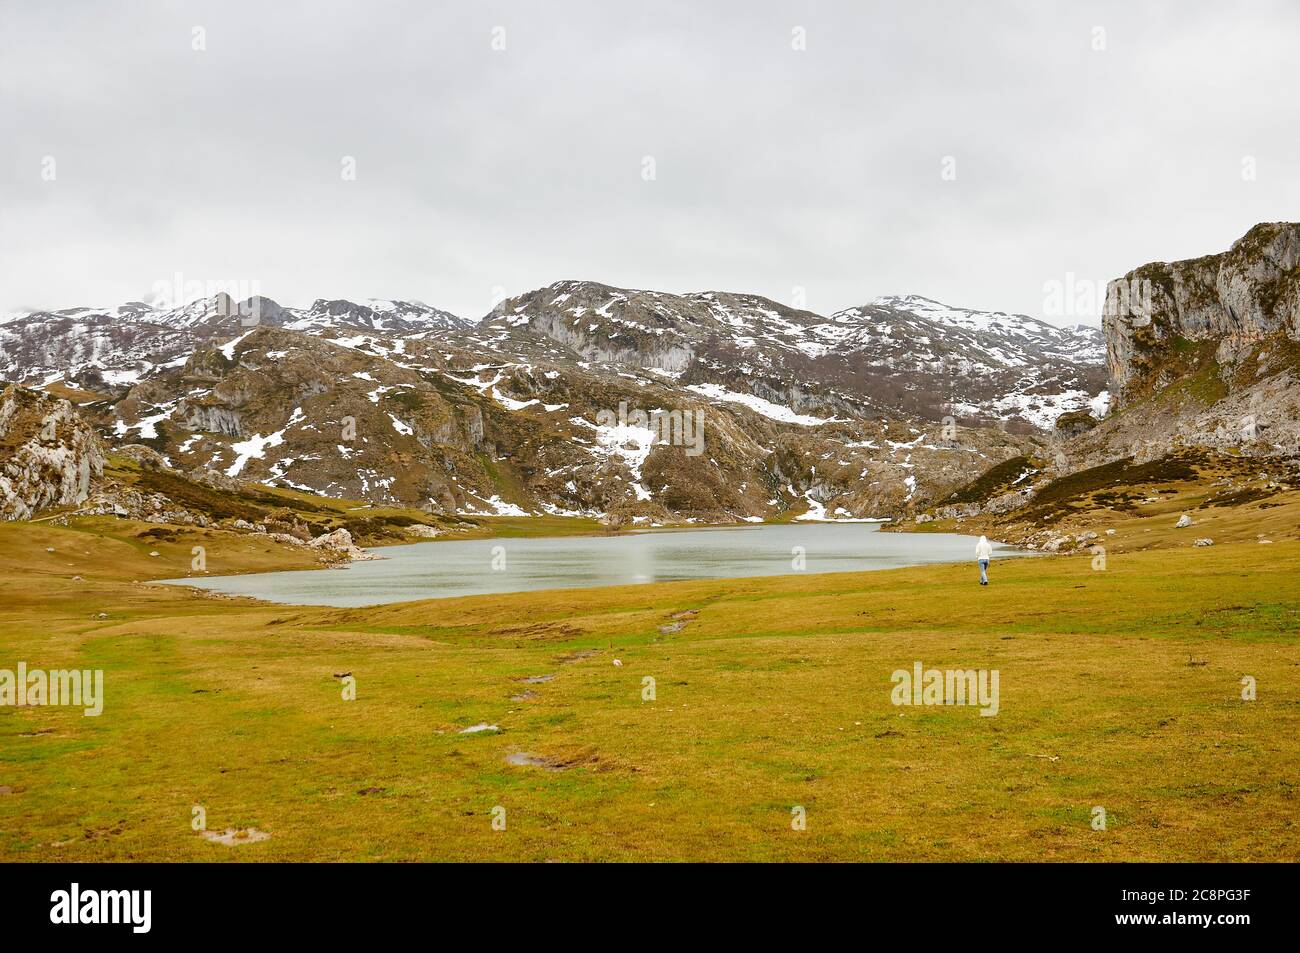 Randonneur au lac glaciaire Lago Ercina par une journée nuageux avec neige dans les sommets environnants (Cangas de Onís, Parc national Picos de Europa, Asturies, Espagne) Banque D'Images